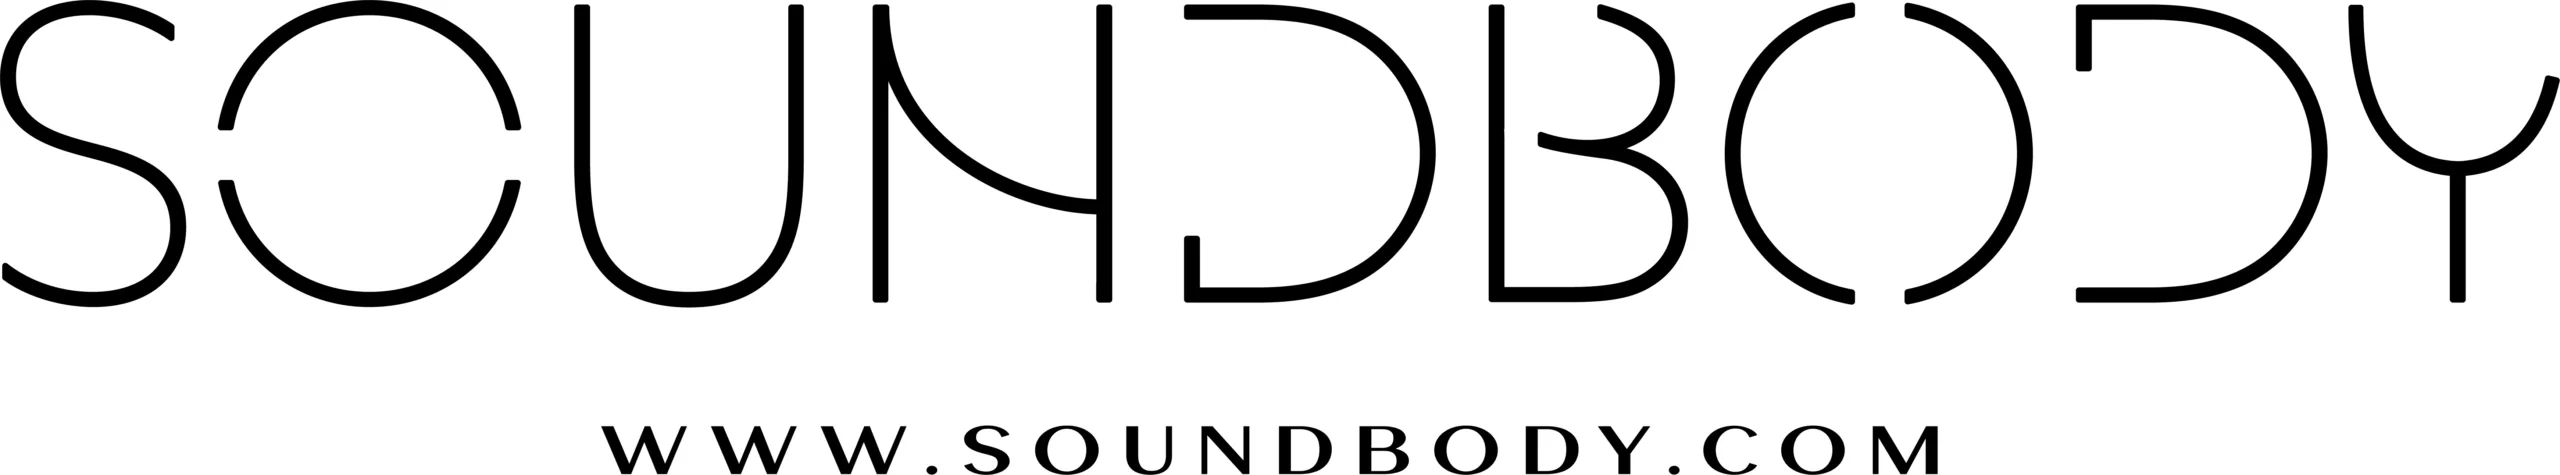 Soundbody logo